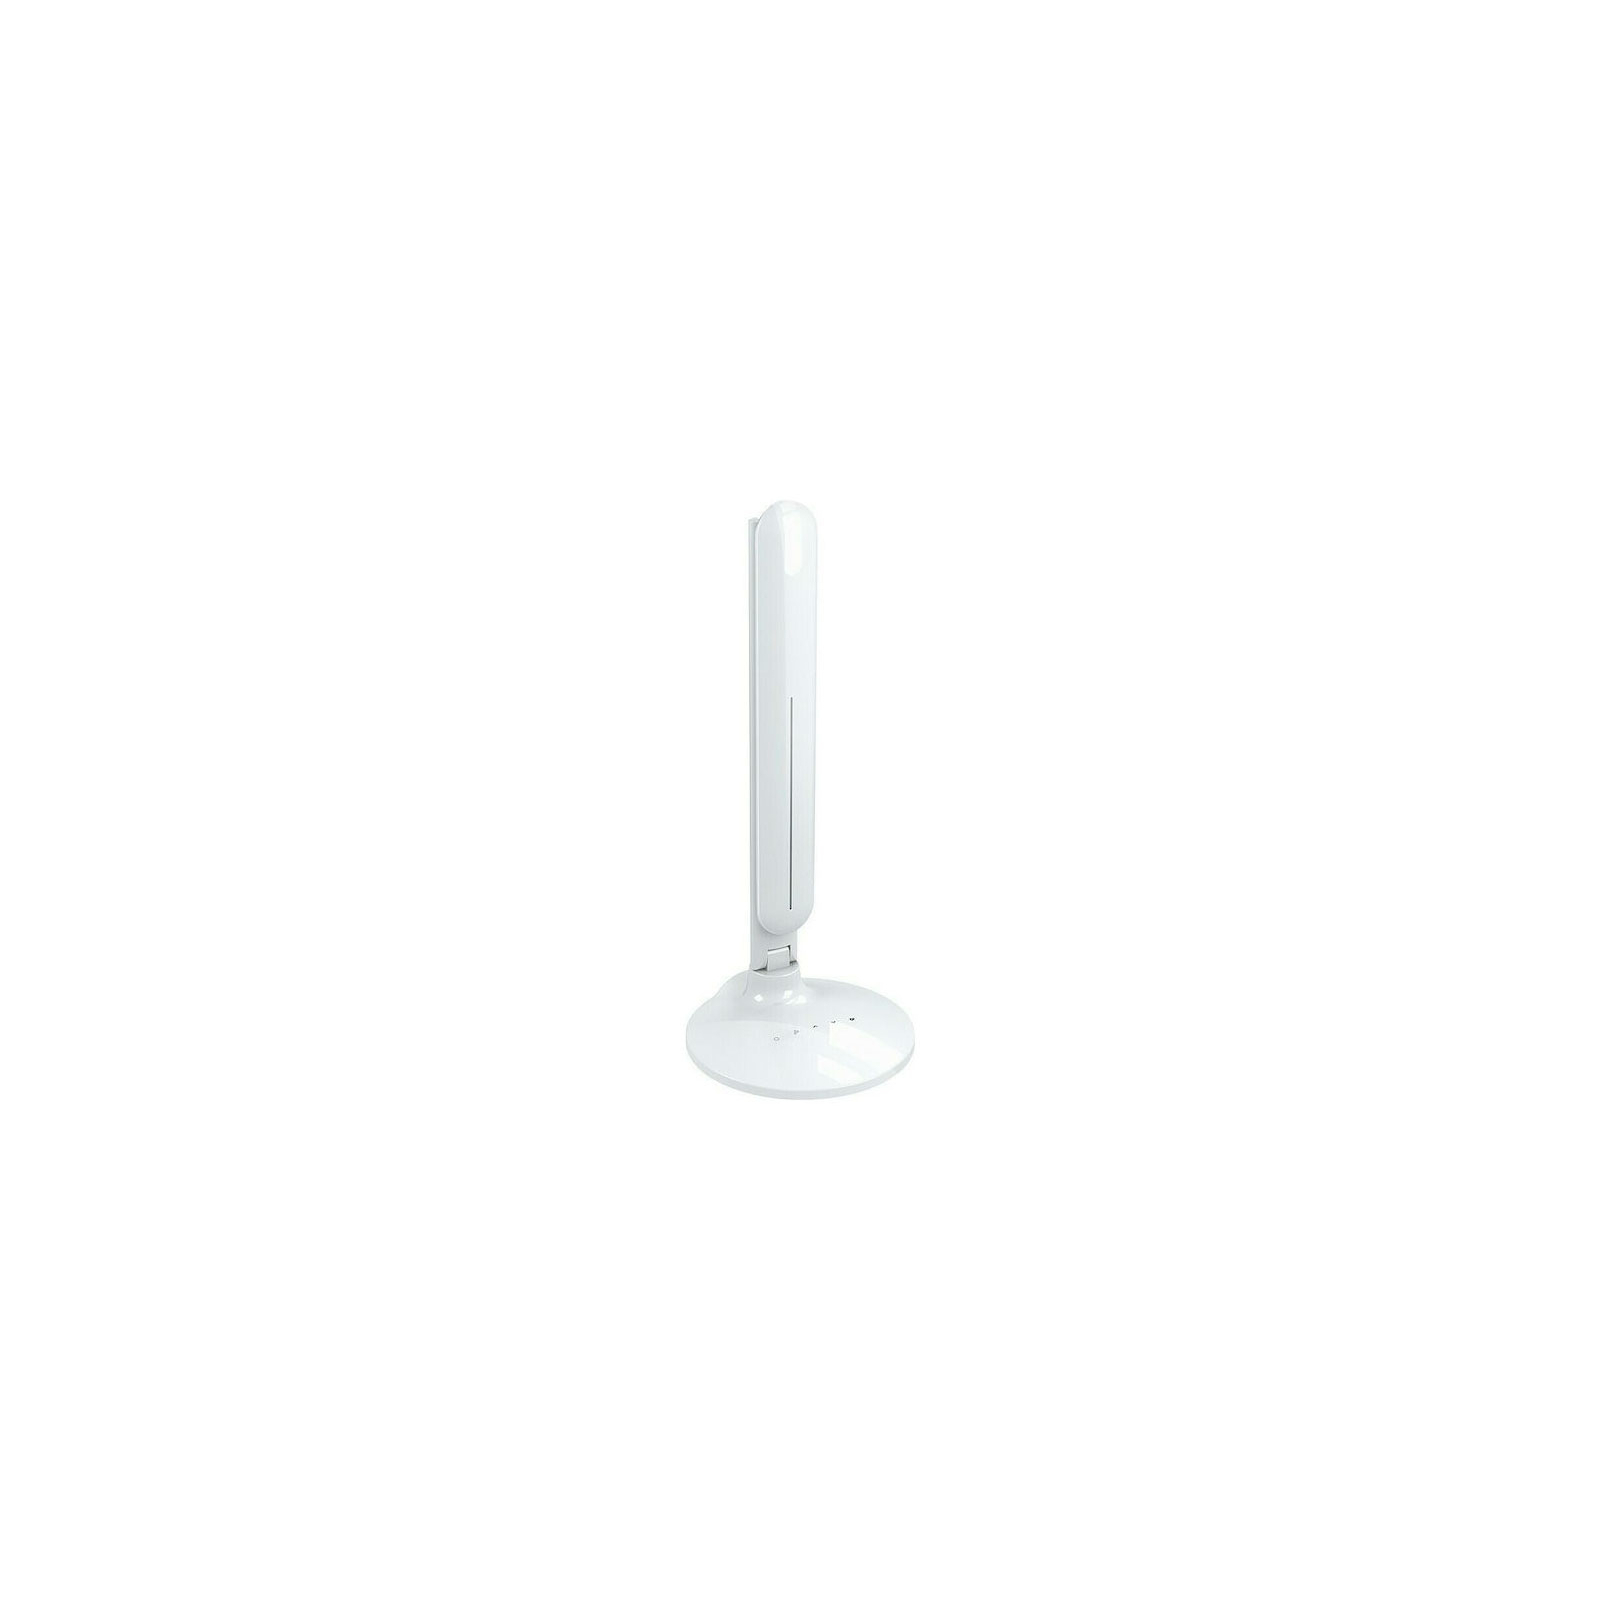 Настольная лампа Mediarange Stylish LED desk lamp with different light modes, white (MROS501) изображение 2